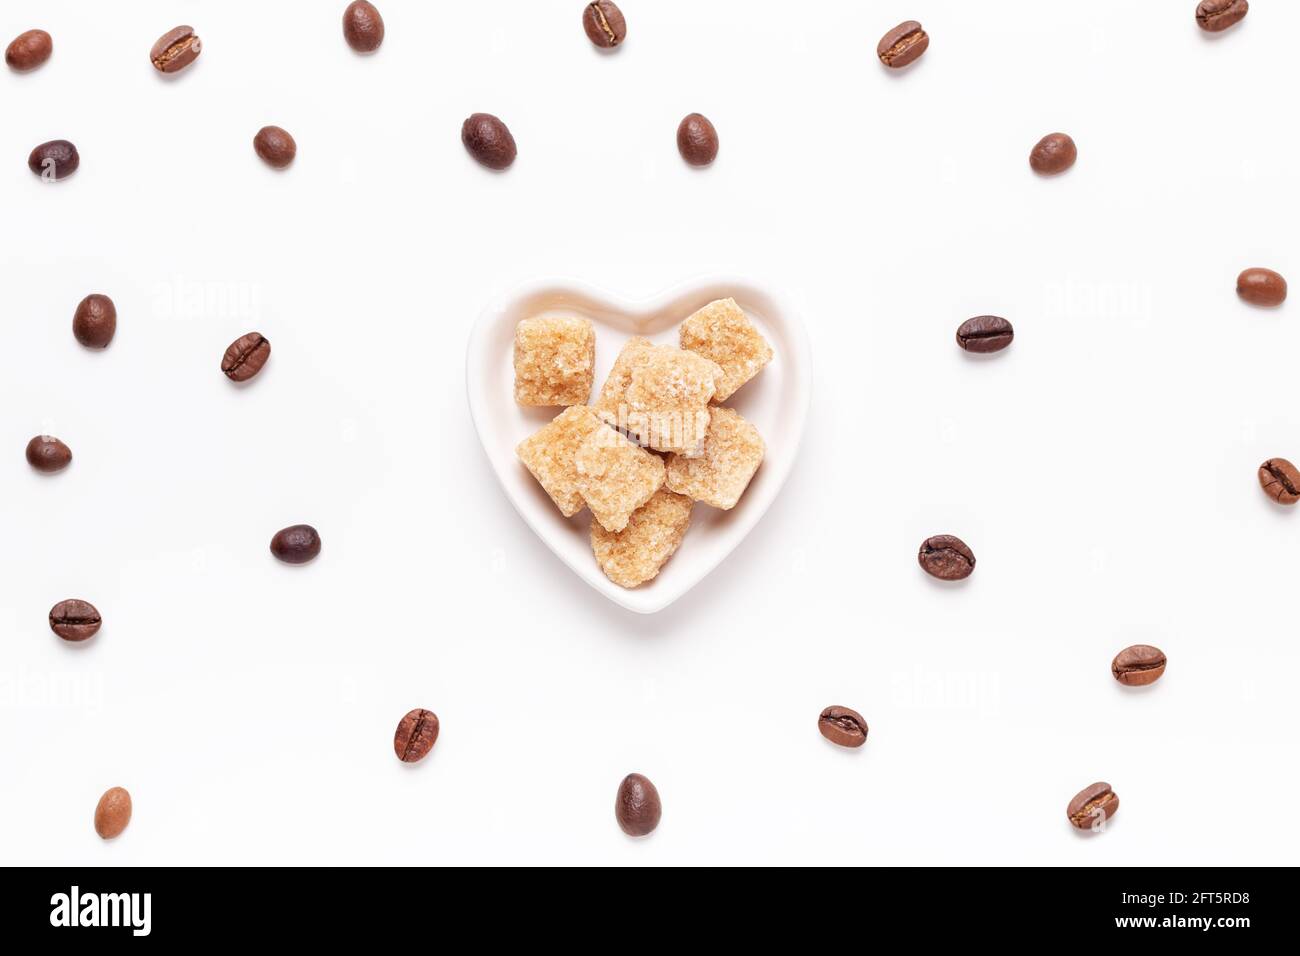 Faire dorer les morceaux de sucre dans une assiette en forme de cœur et les grains de café torréfiés sur fond blanc. Vue de dessus. Espace de copie - image Banque D'Images